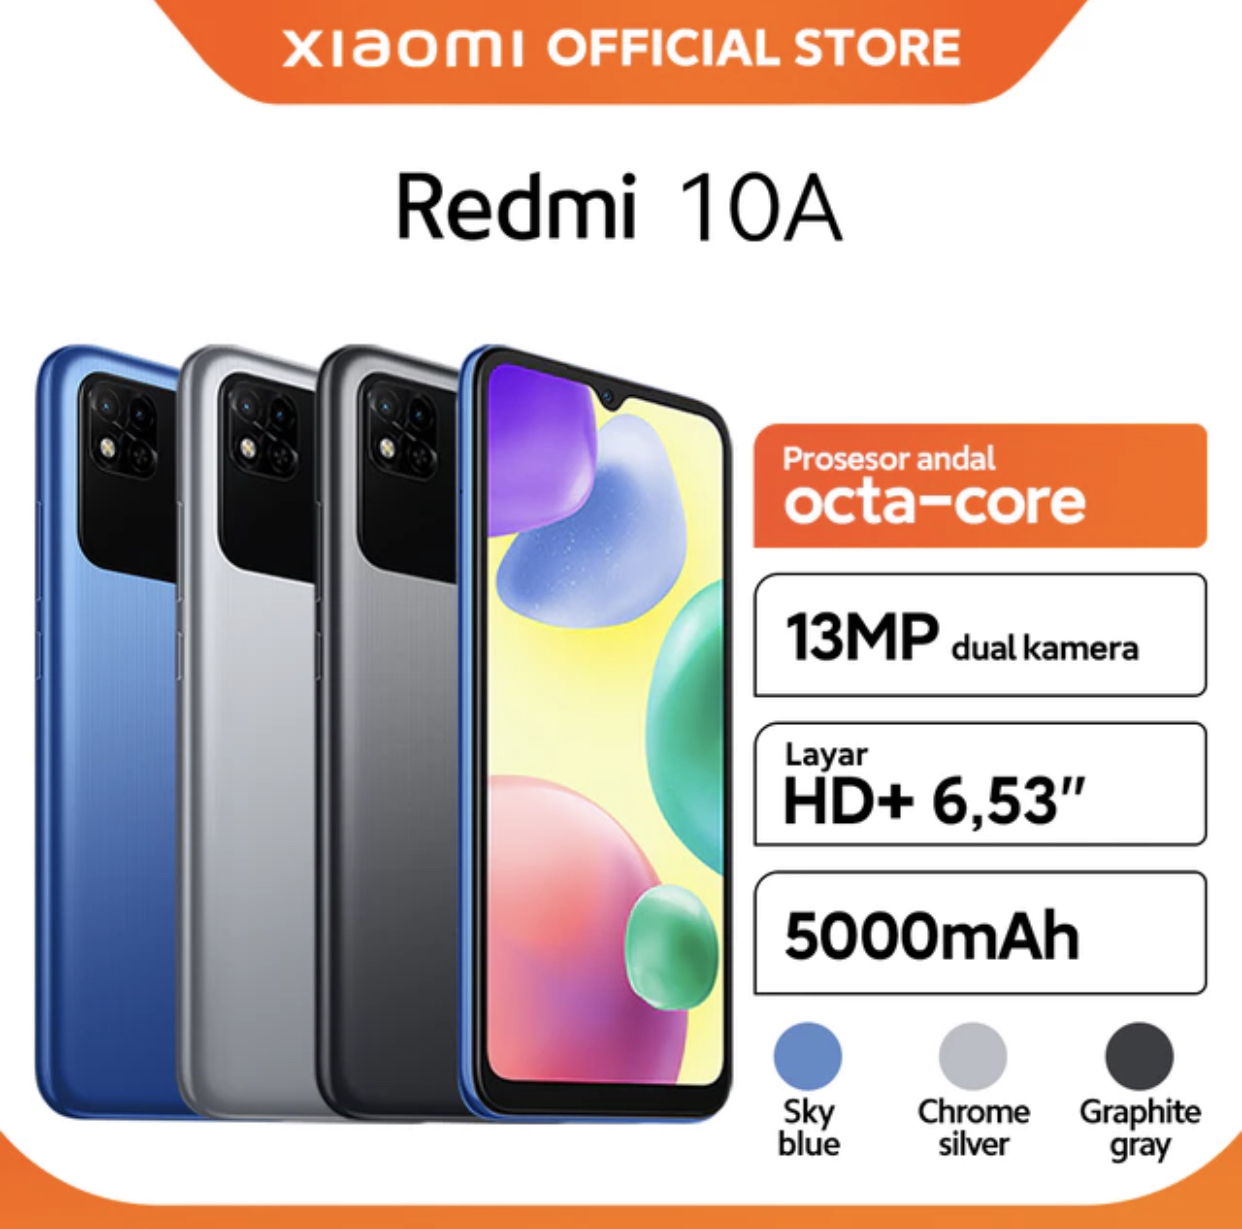 8. Xiaomi redmi 10 A